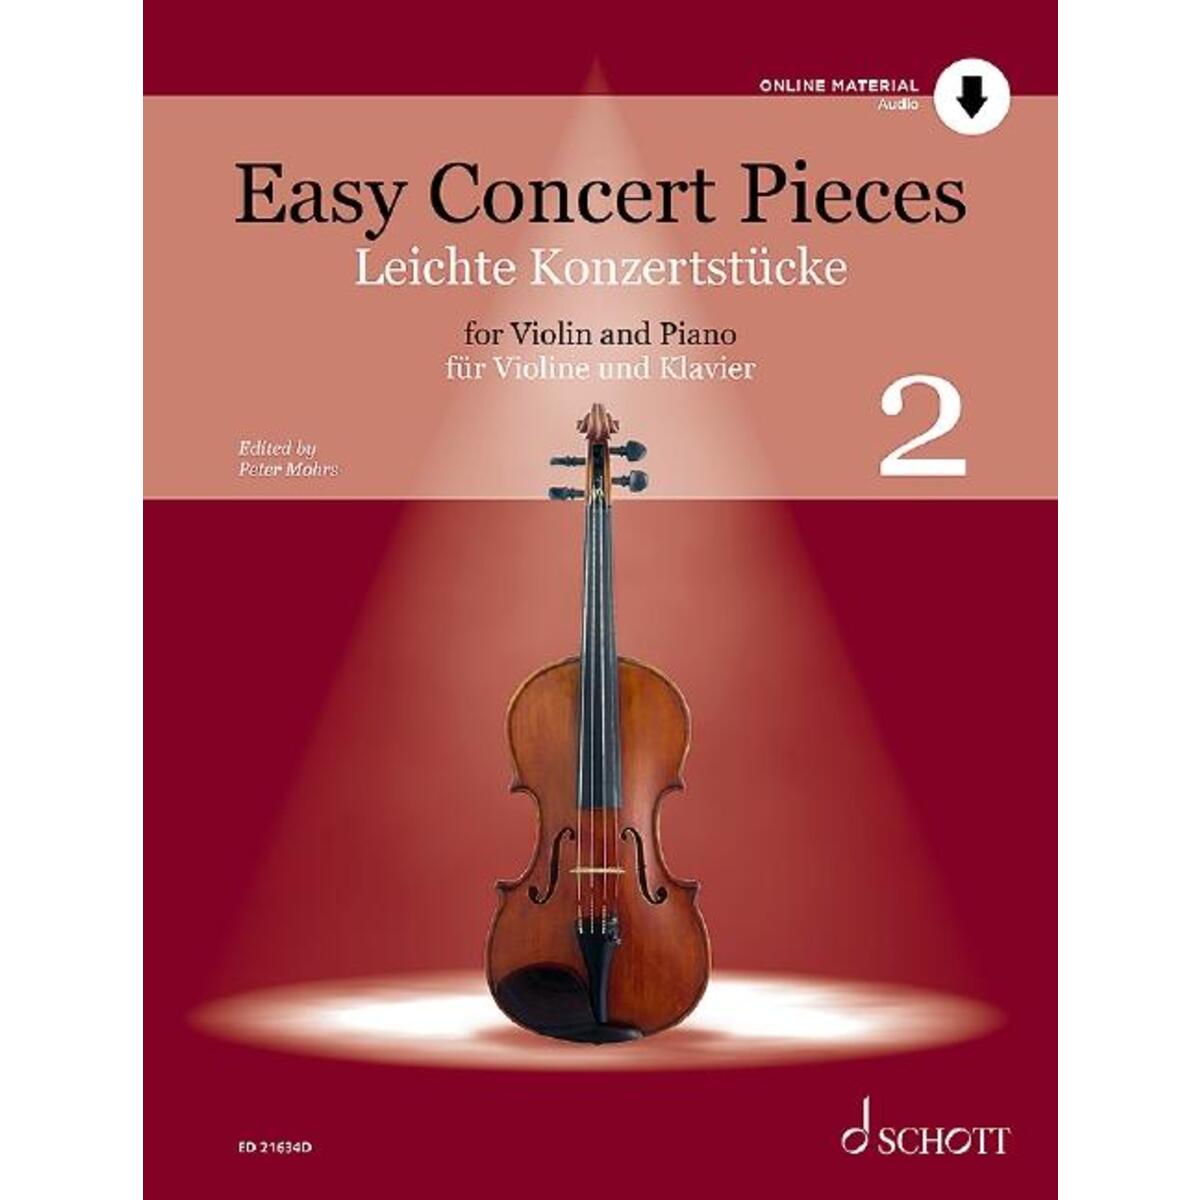 Leichte Konzertstücke - Easy Concert Pieces für Violine und Klavier von Schott Music